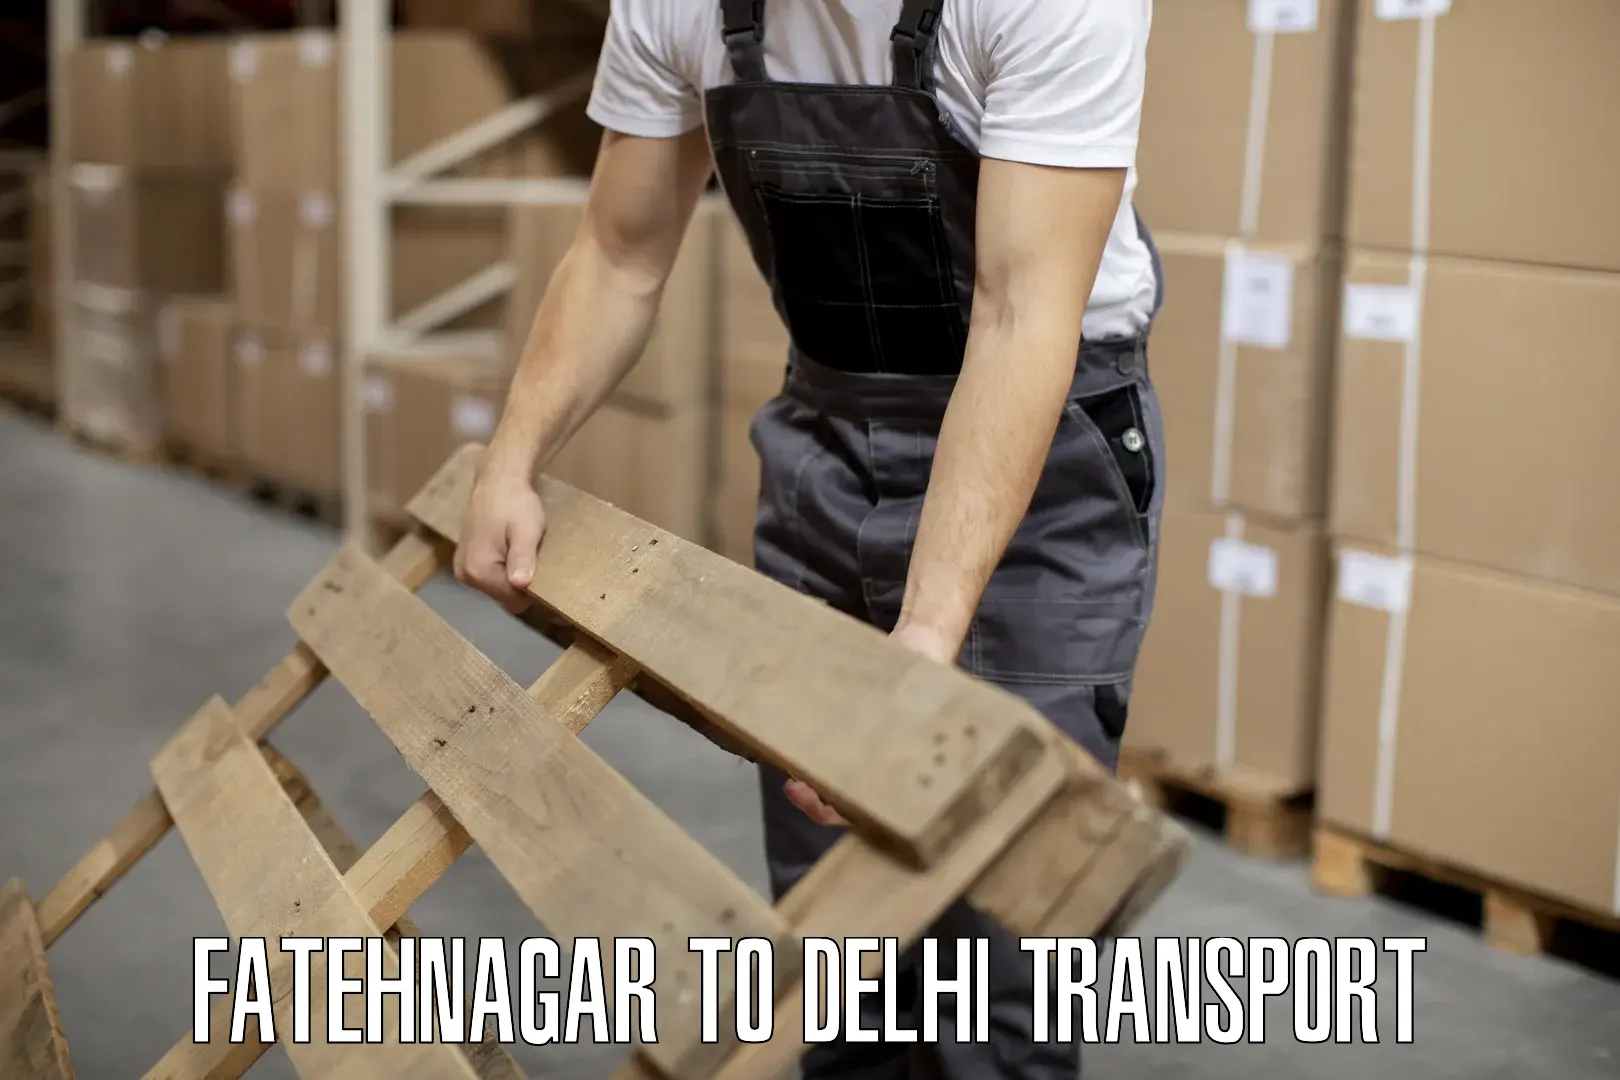 Daily transport service Fatehnagar to University of Delhi